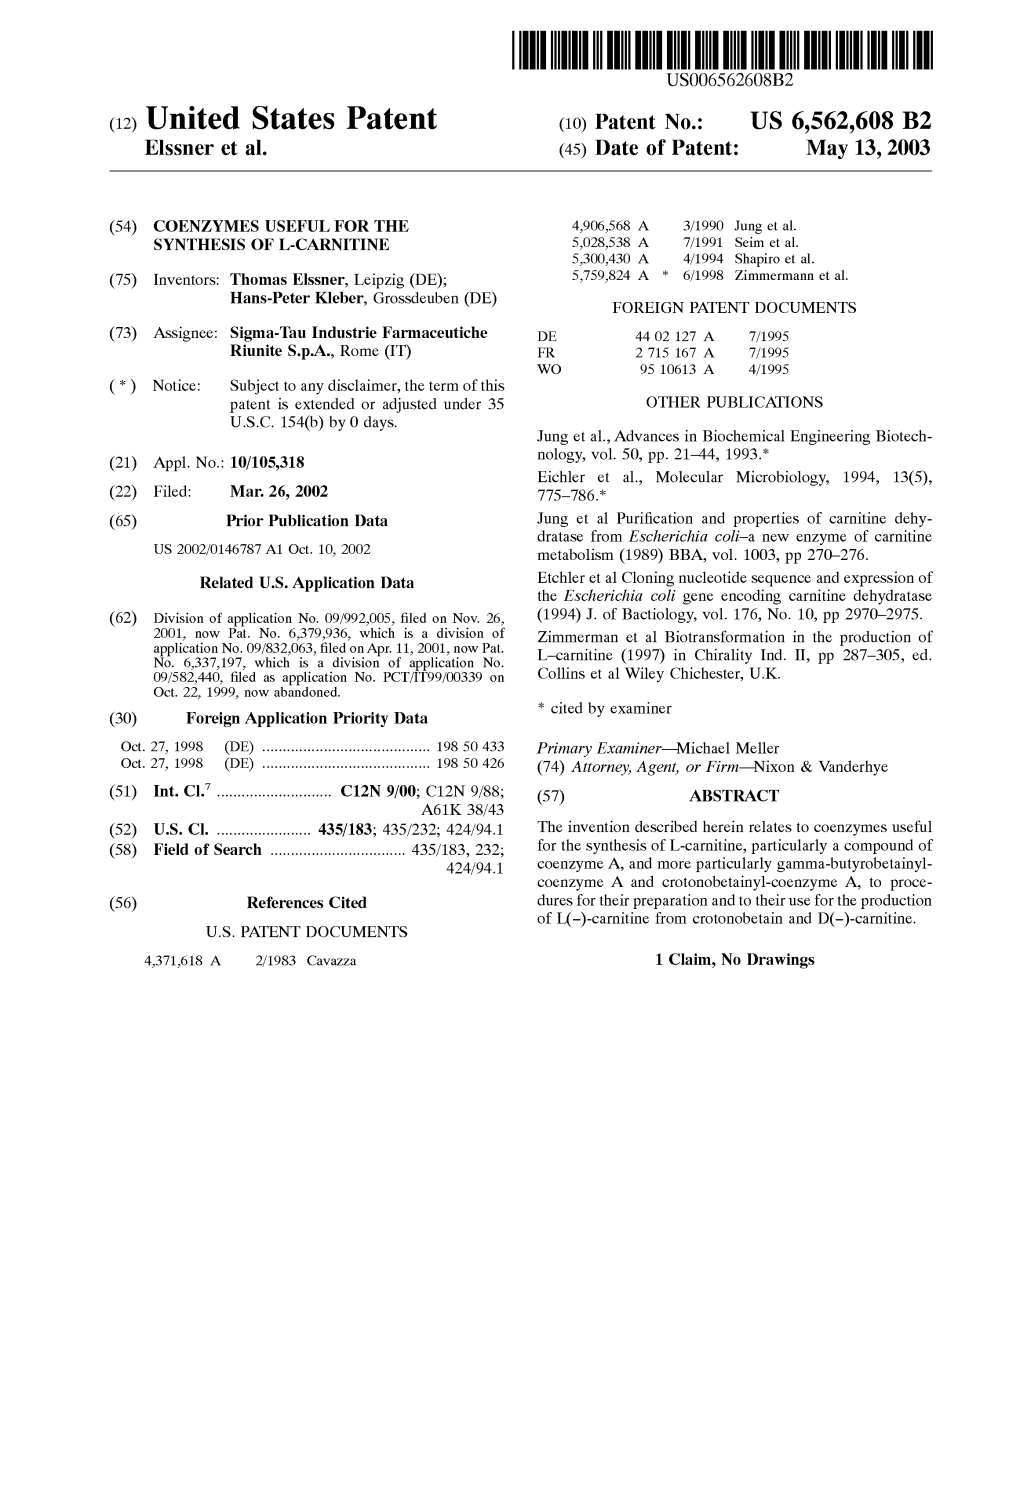 (12) United States Patent (10) Patent No.: US 6,562,608 B2 Elssner Et Al